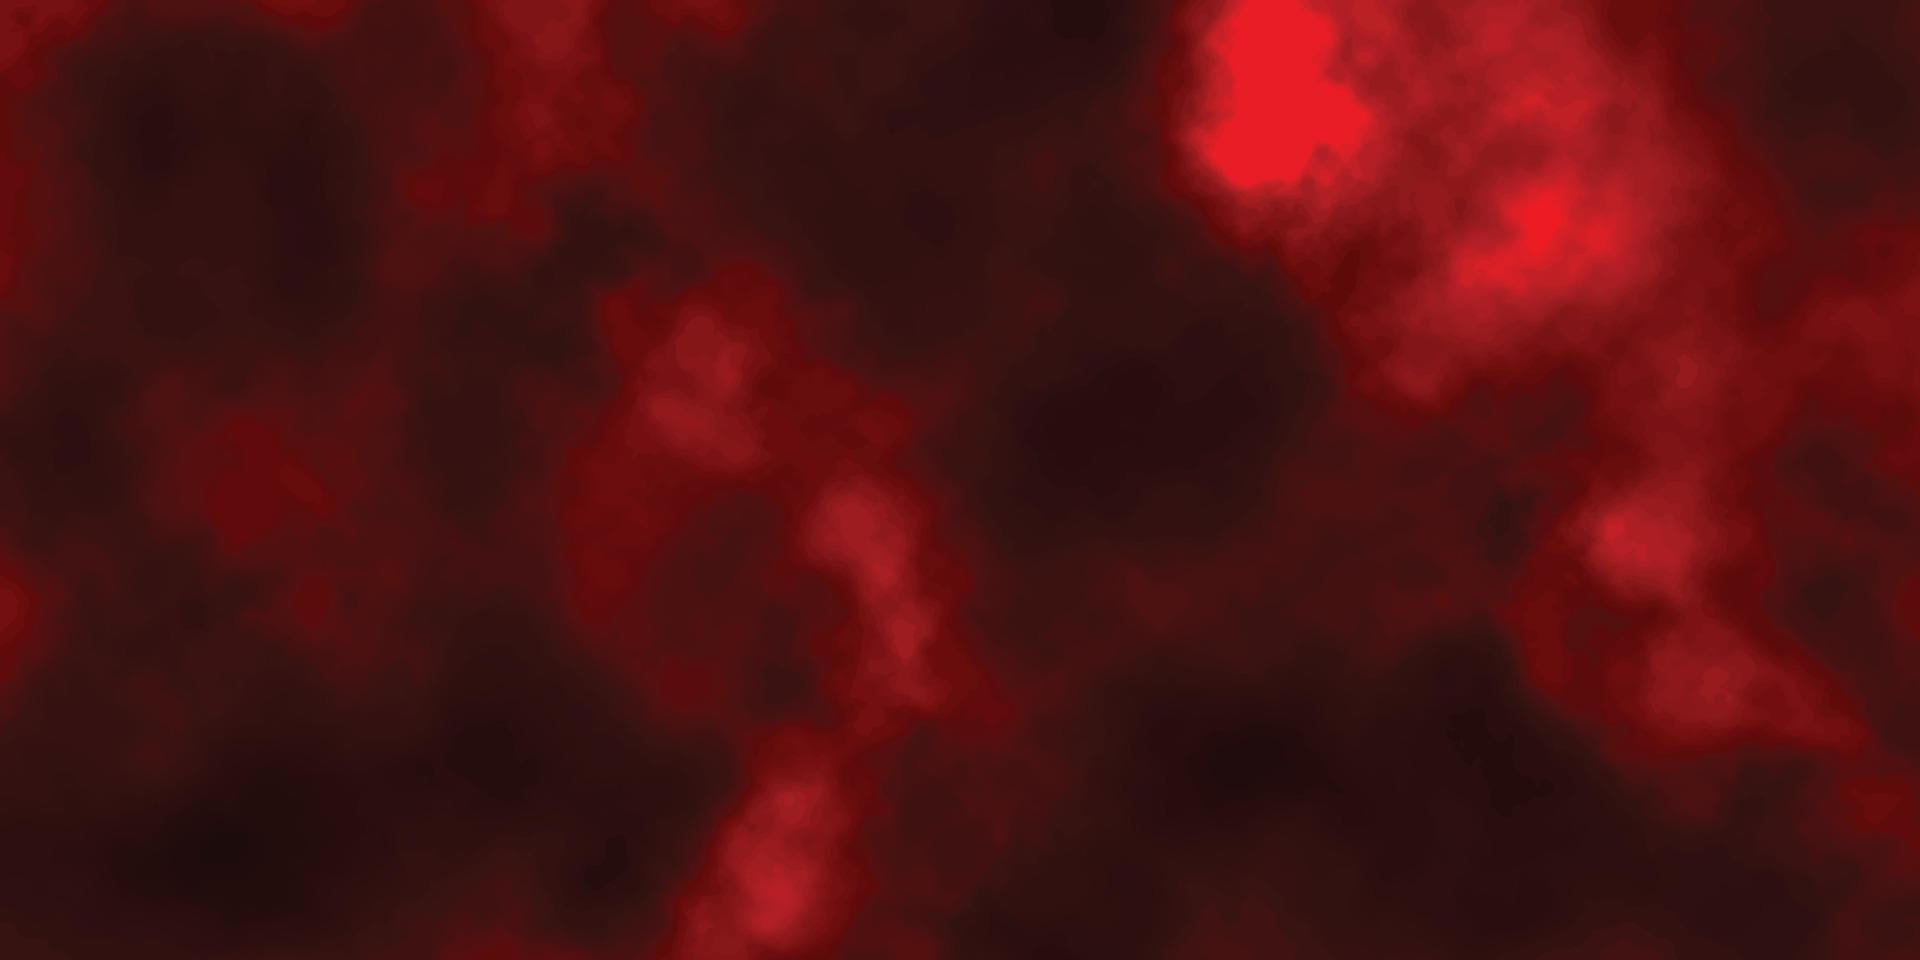 fondo de grunge rojo con espacio para texto, pintura de fondo de grunge rojo acuarela abstracta, pared de cemento rojo con fondo de textura oscura, fondo de grunge pintado a mano negro y rojo con textura antigua vector